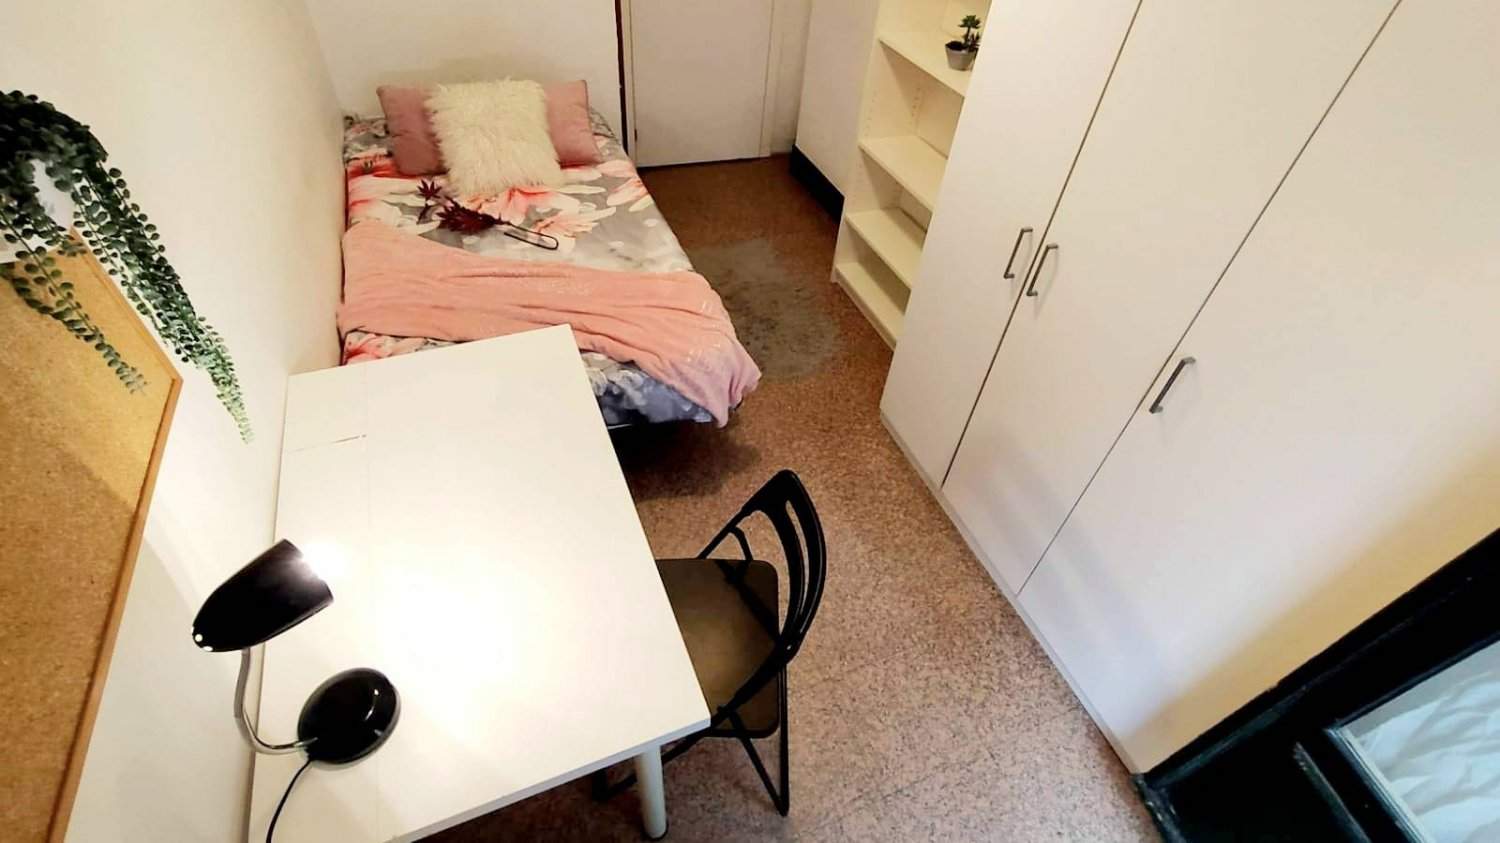 Habitaciones en piso compartido en Madrid - ANA7